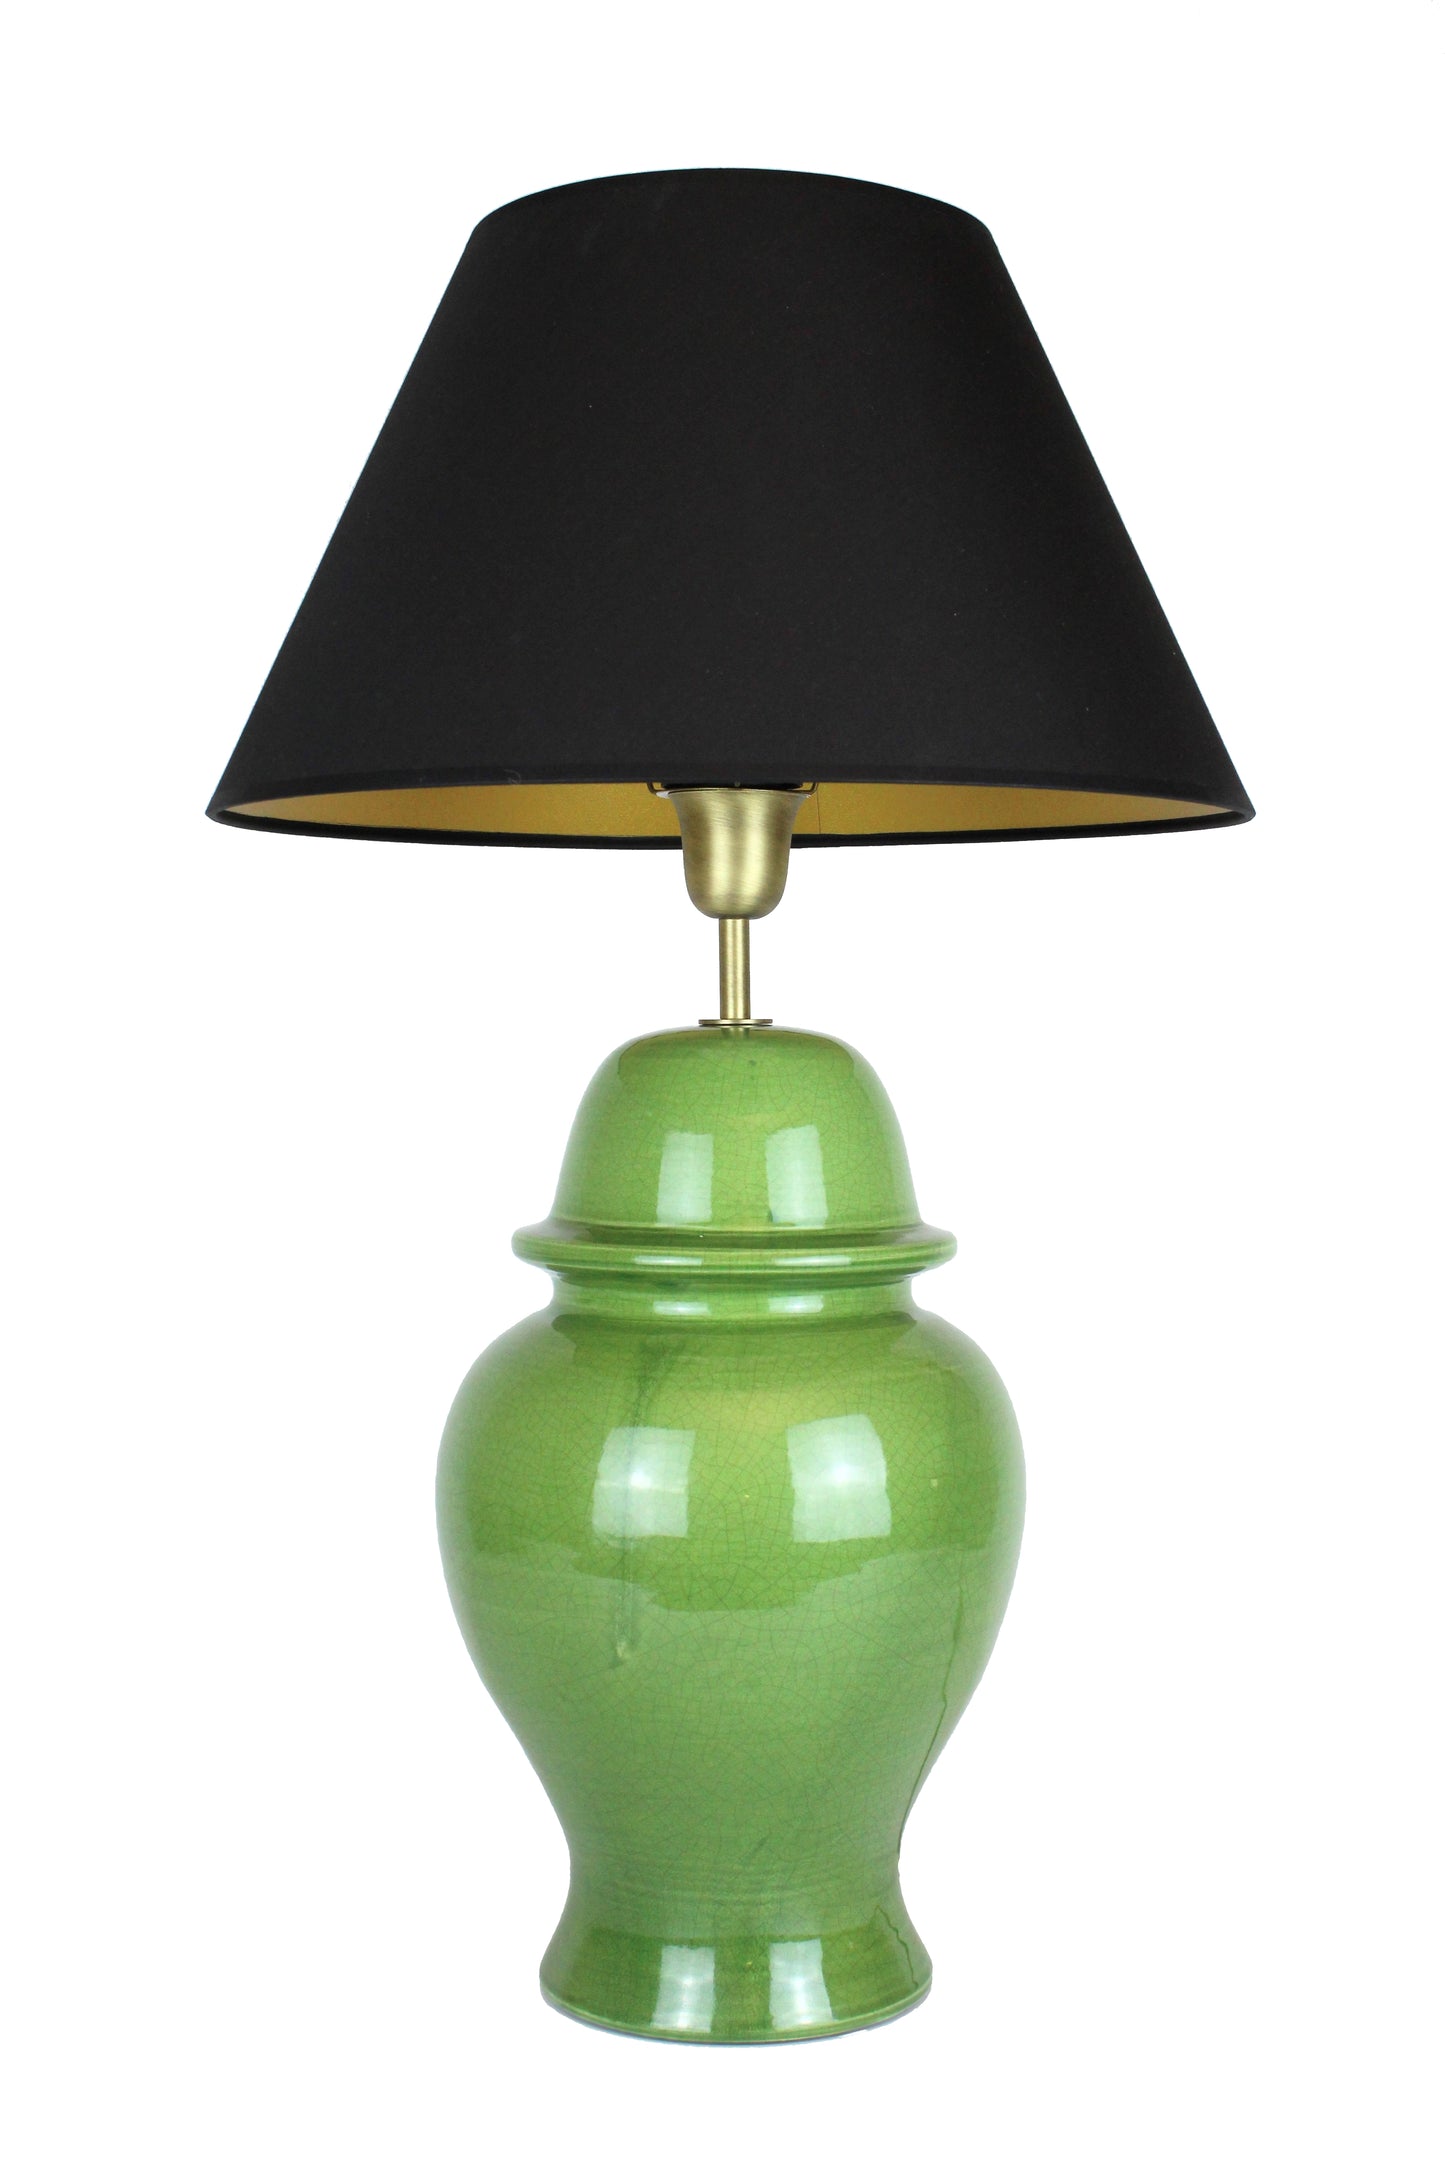 leuchtend grün Keramilklampe mit schwarzem Lampenschirm